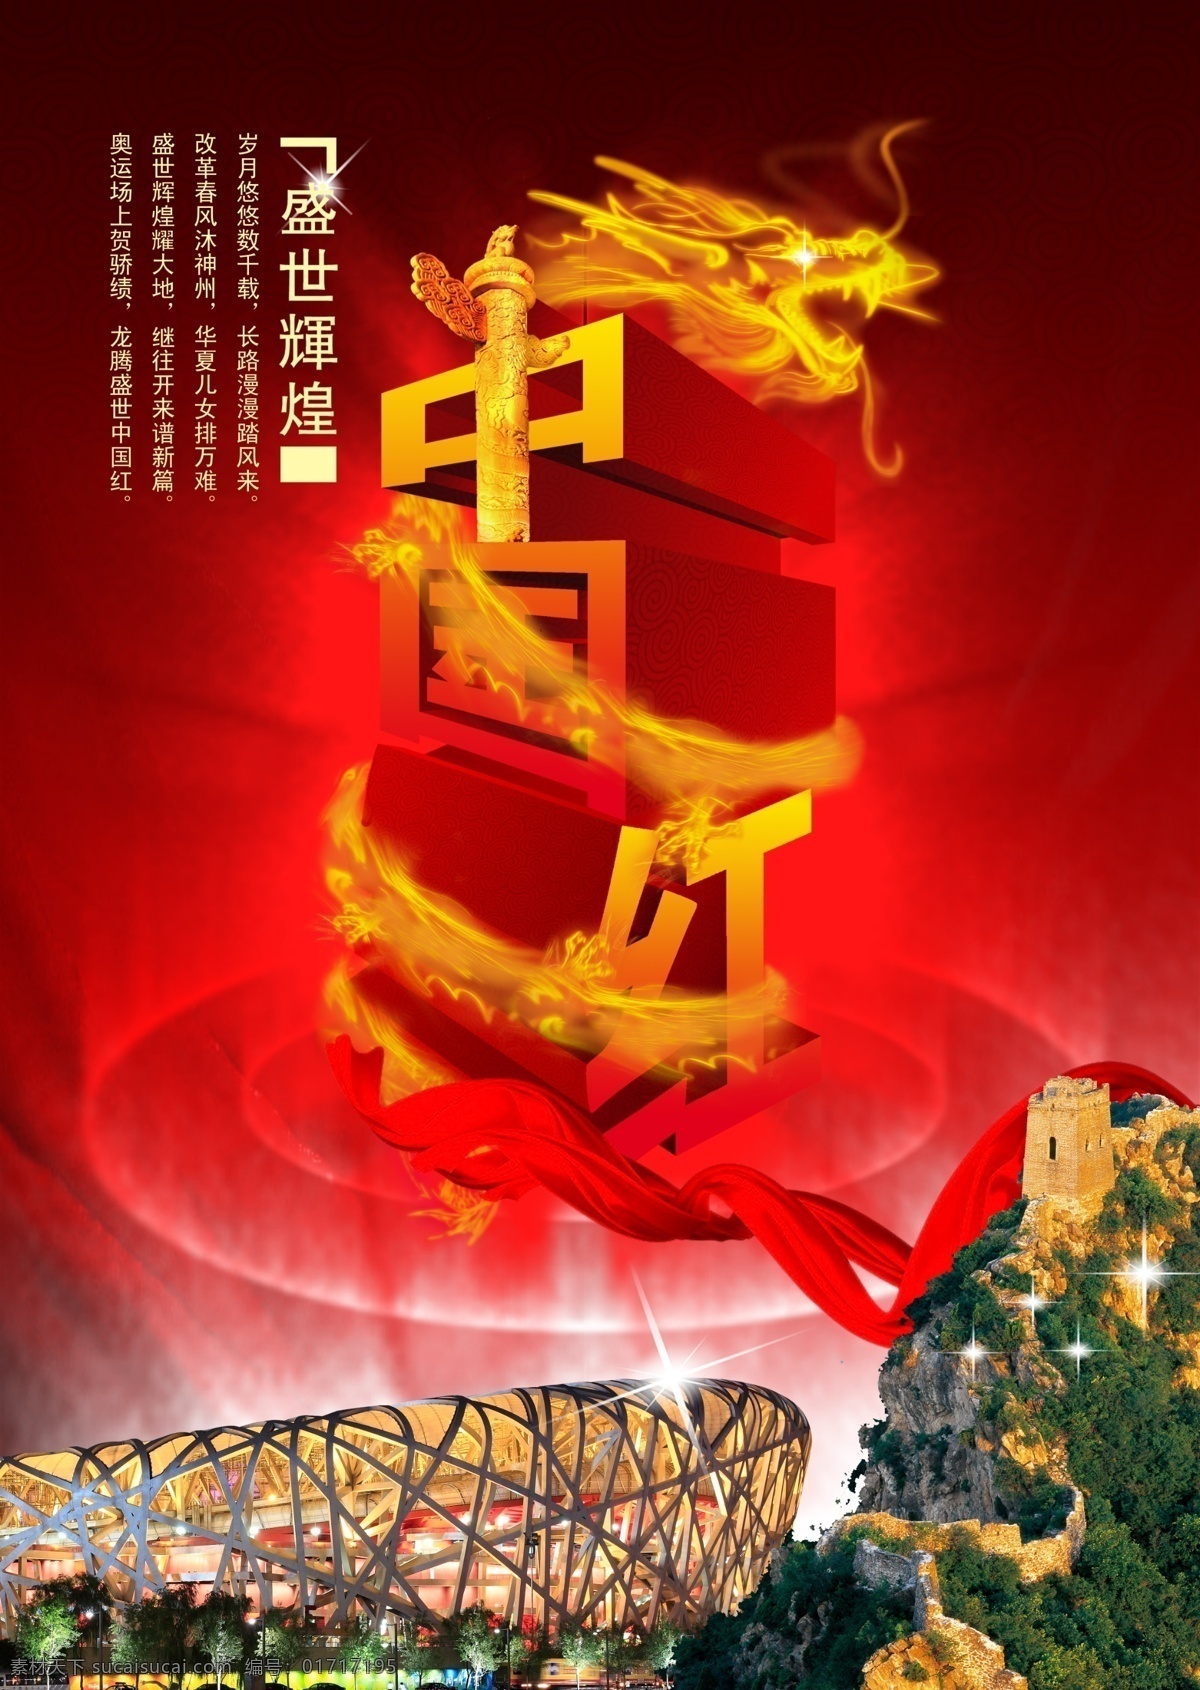 盛世 辉煌 海报素材下载 中国红 海报模板 海报素材 海报下载 源文件